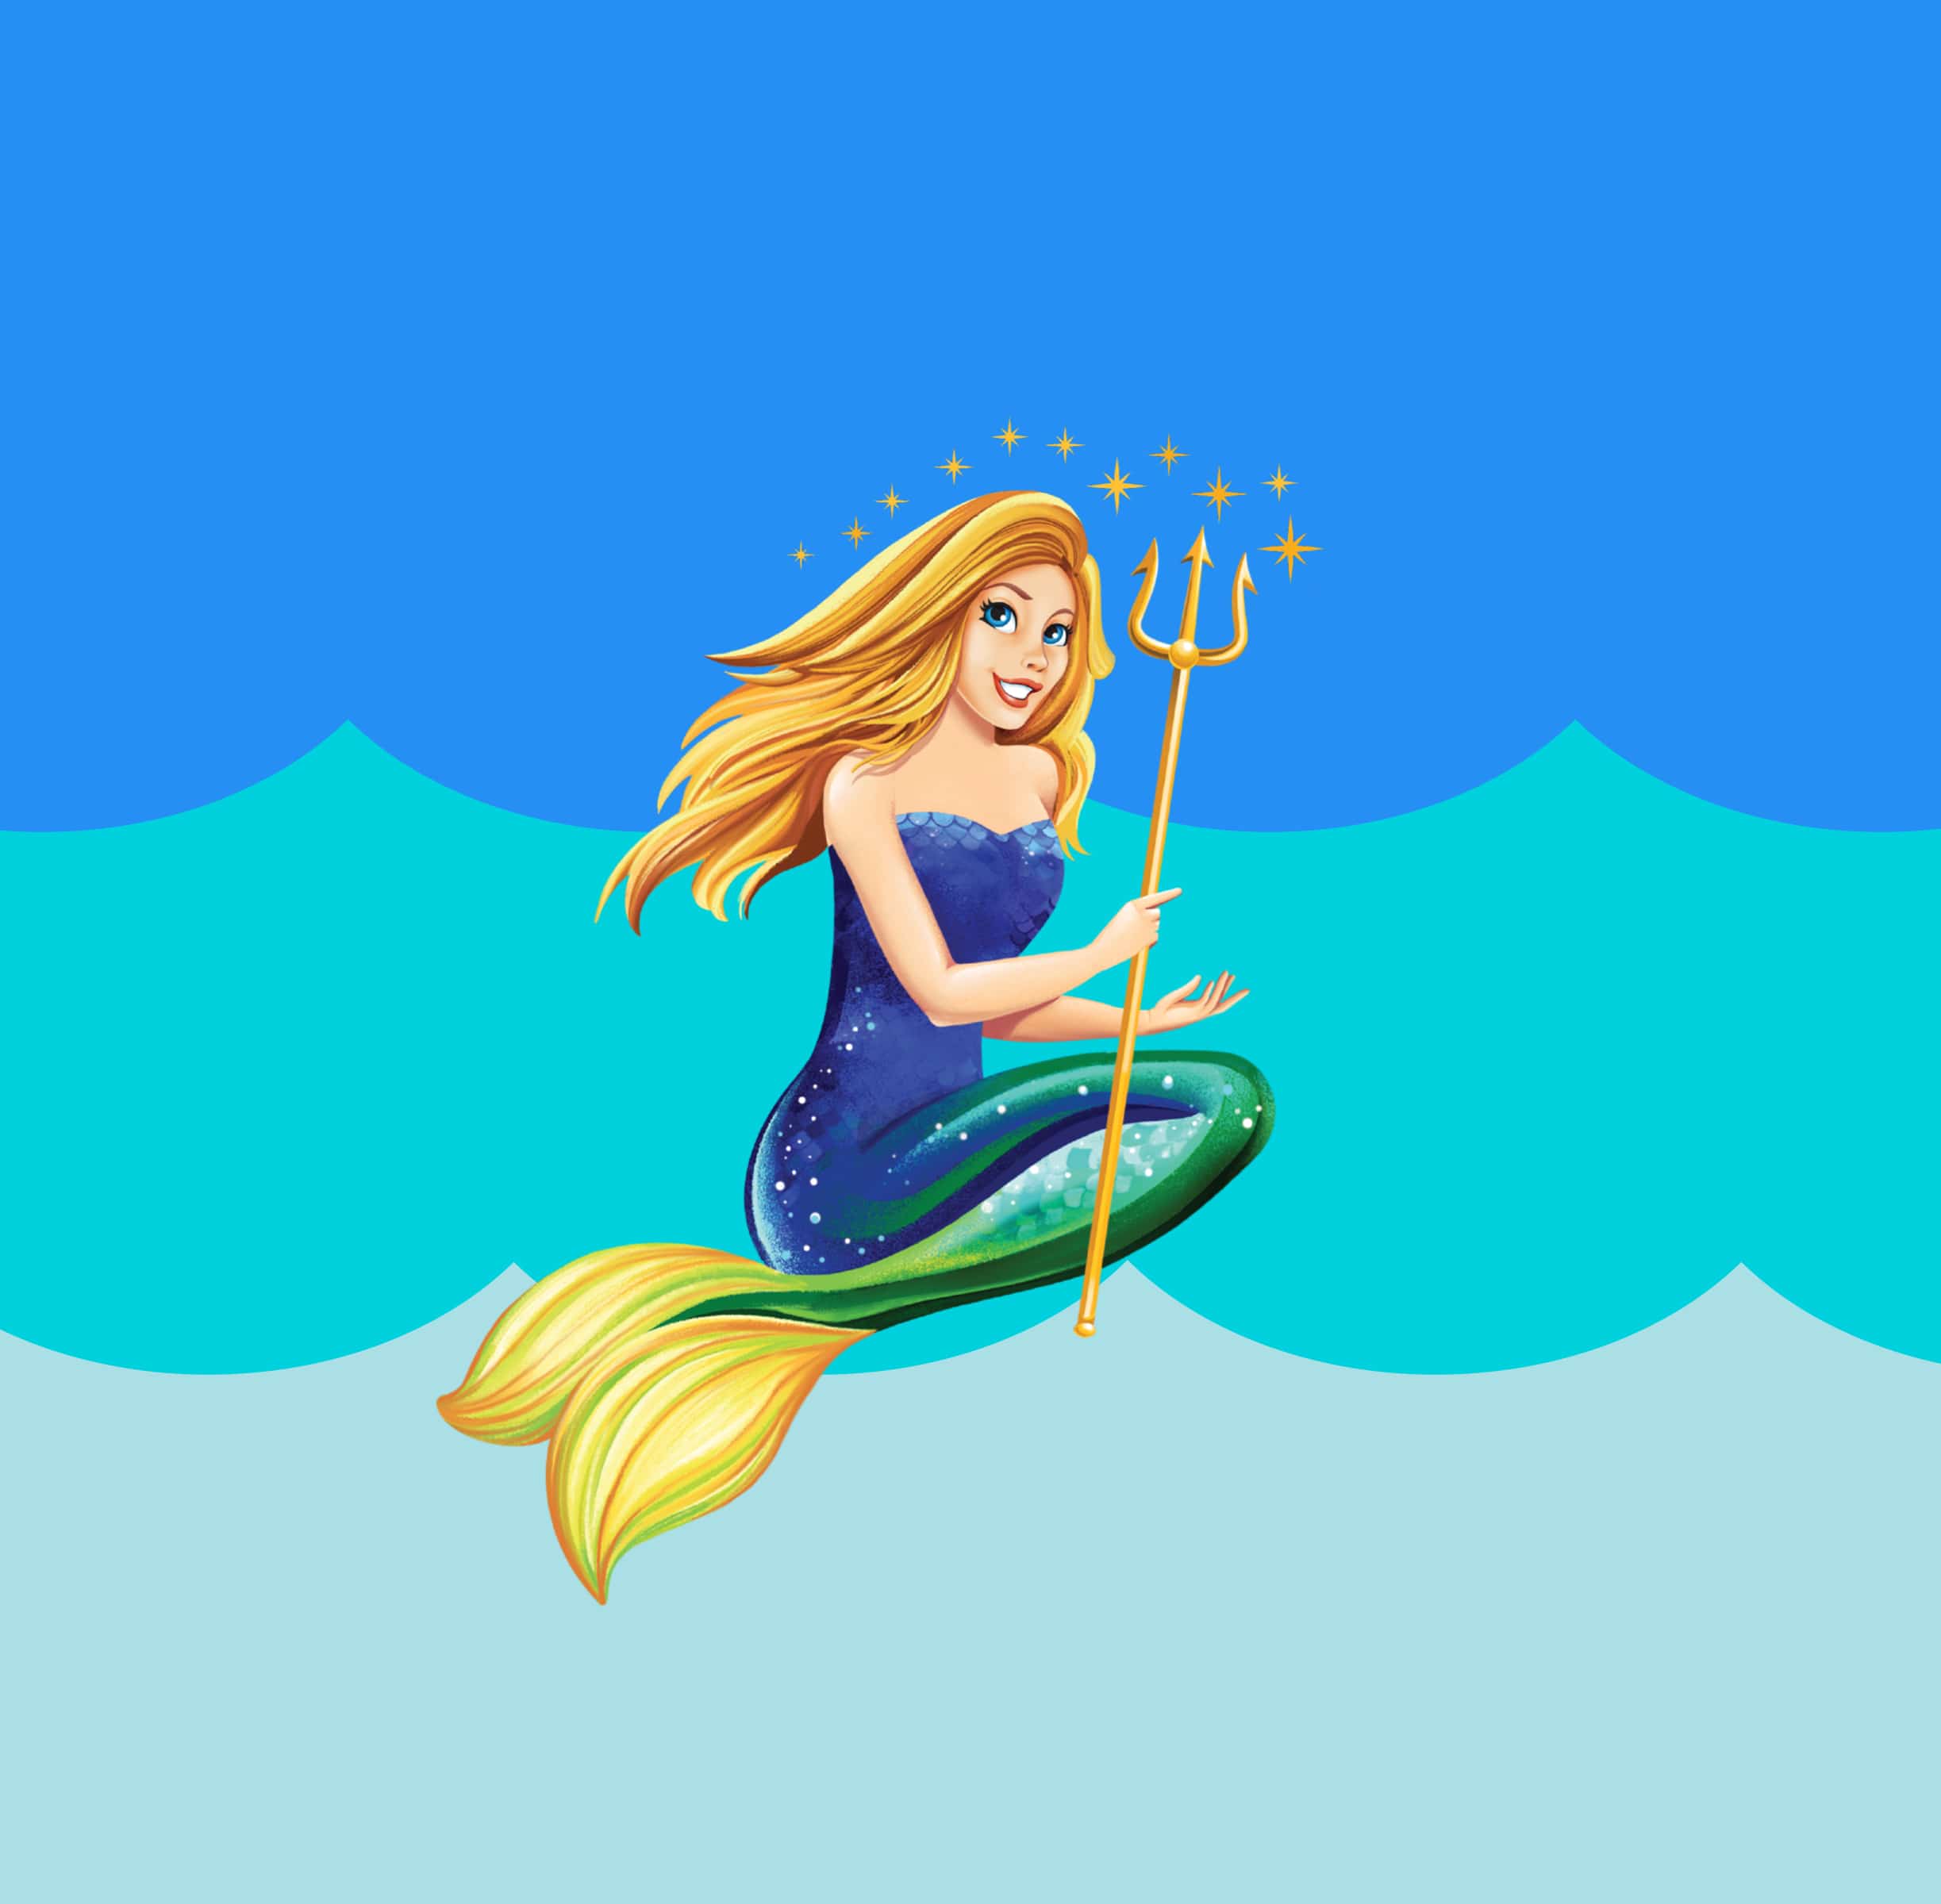 grace lee whitney mermaid